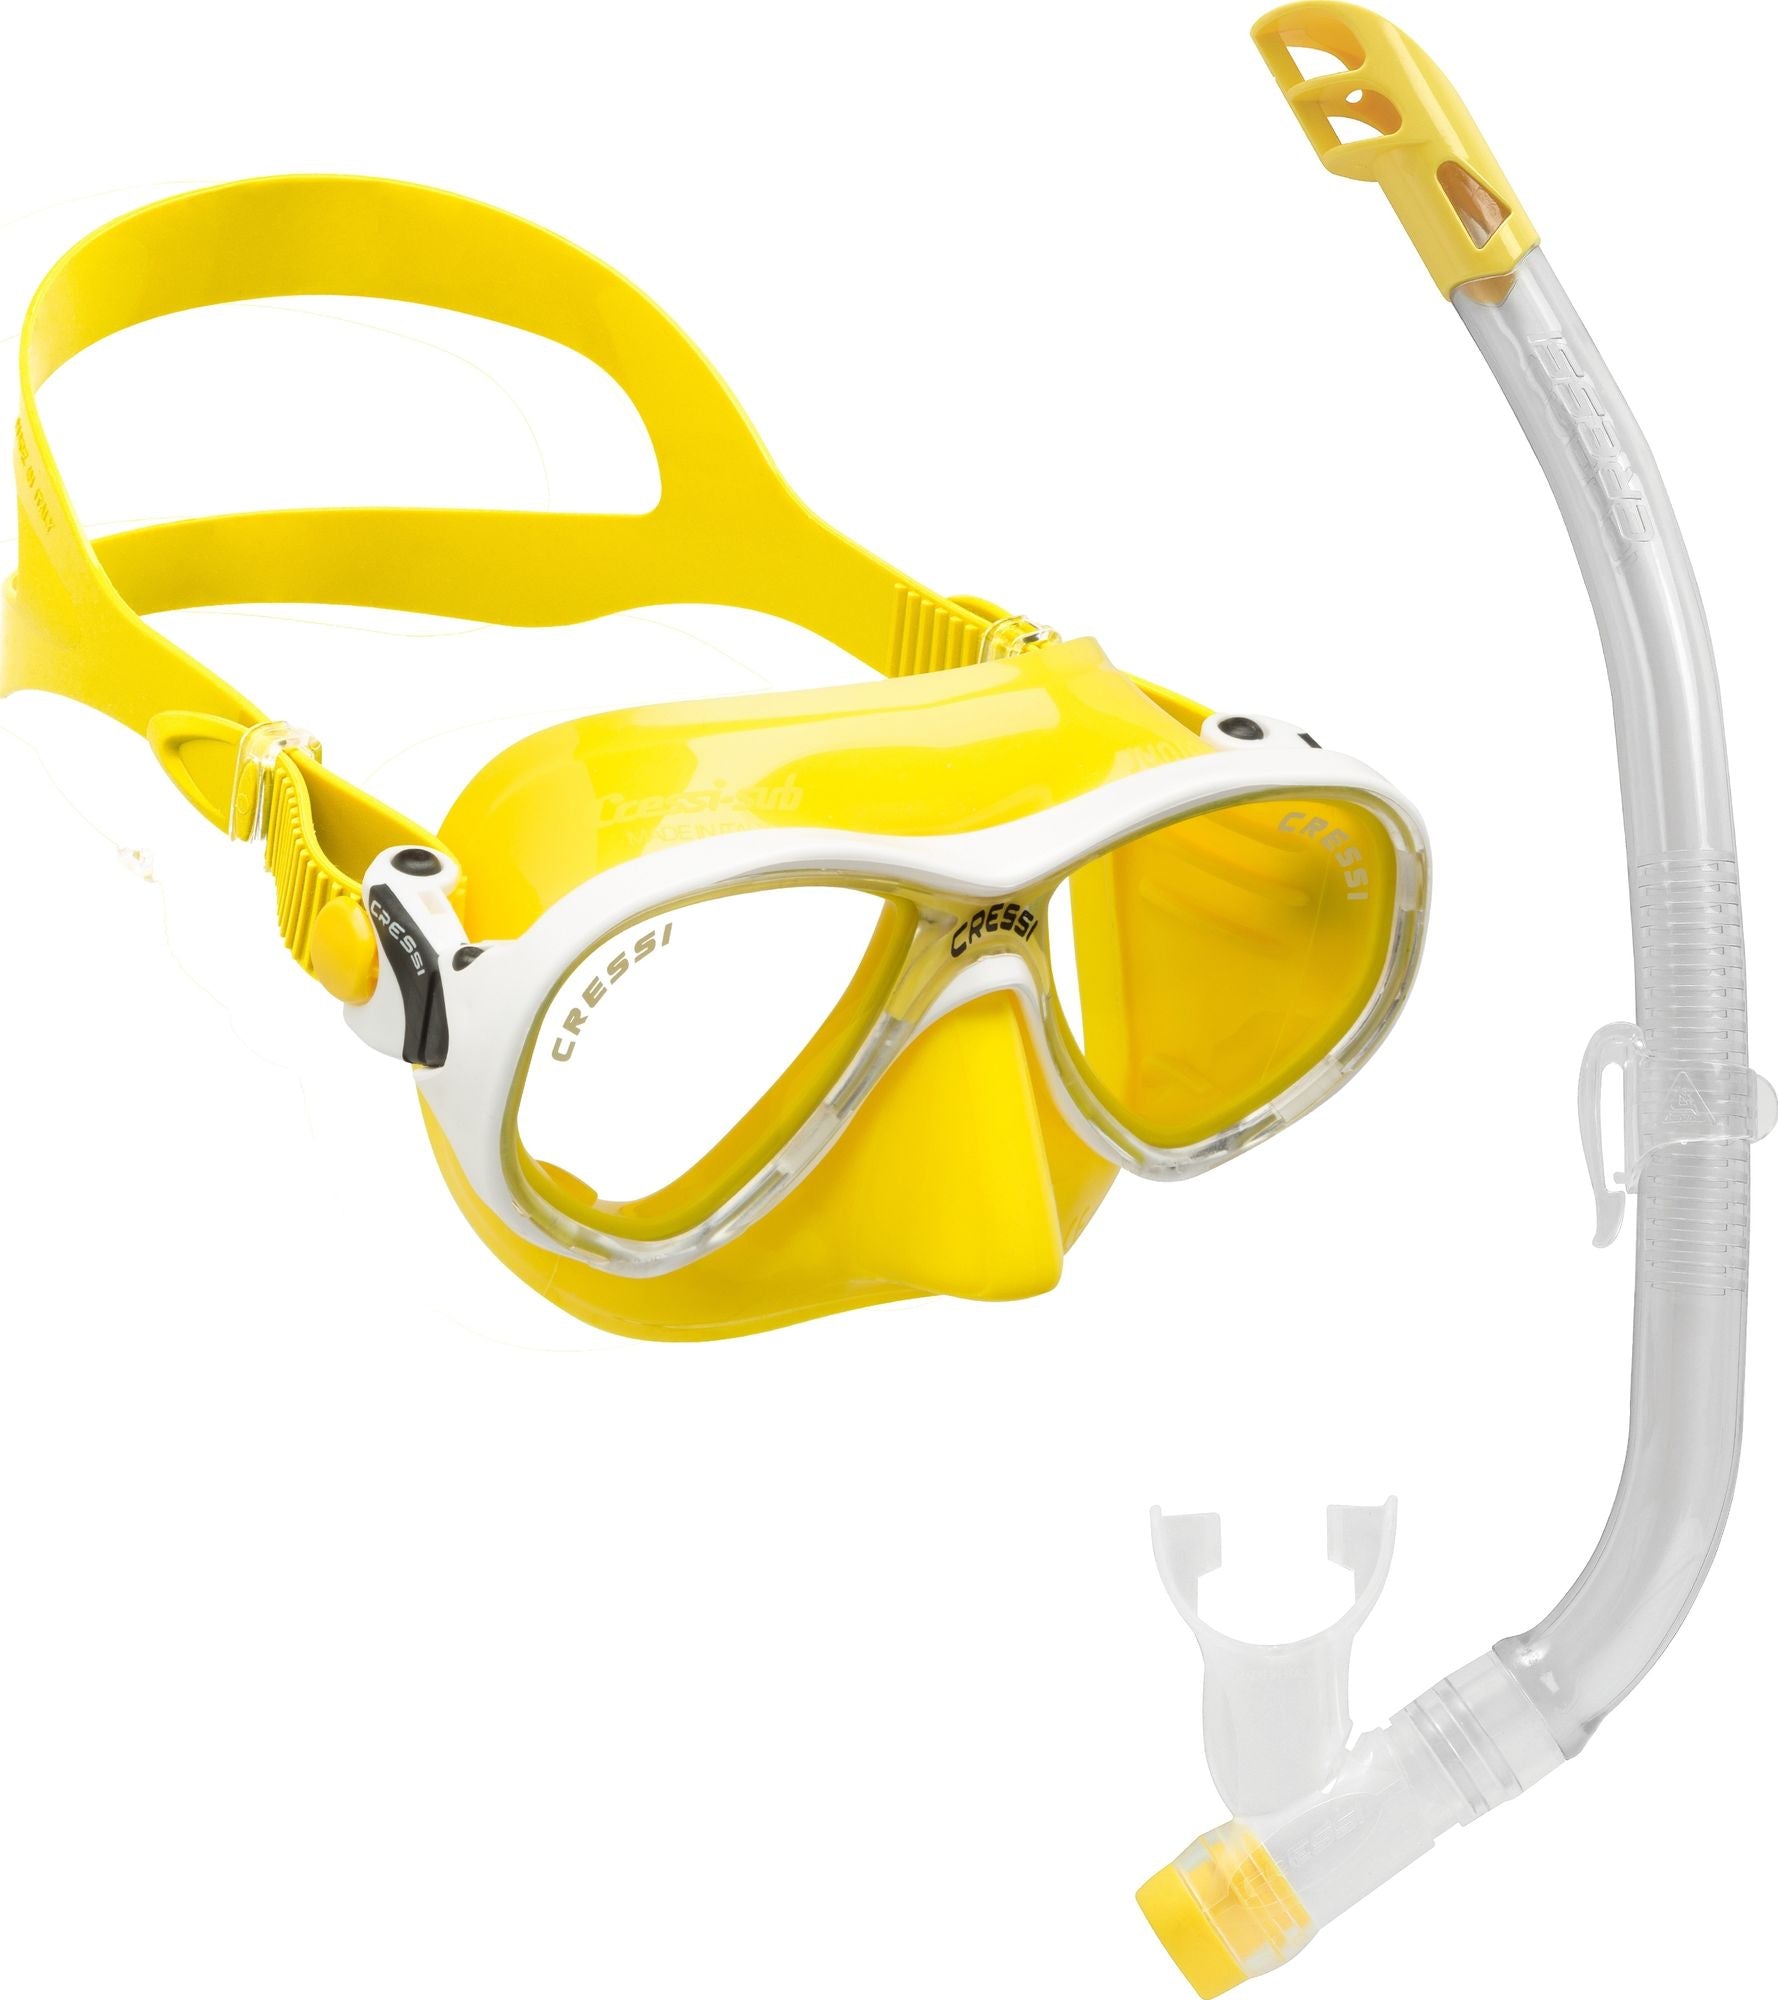 Marea Junior + Top Combo - Snorkelling, Scuba